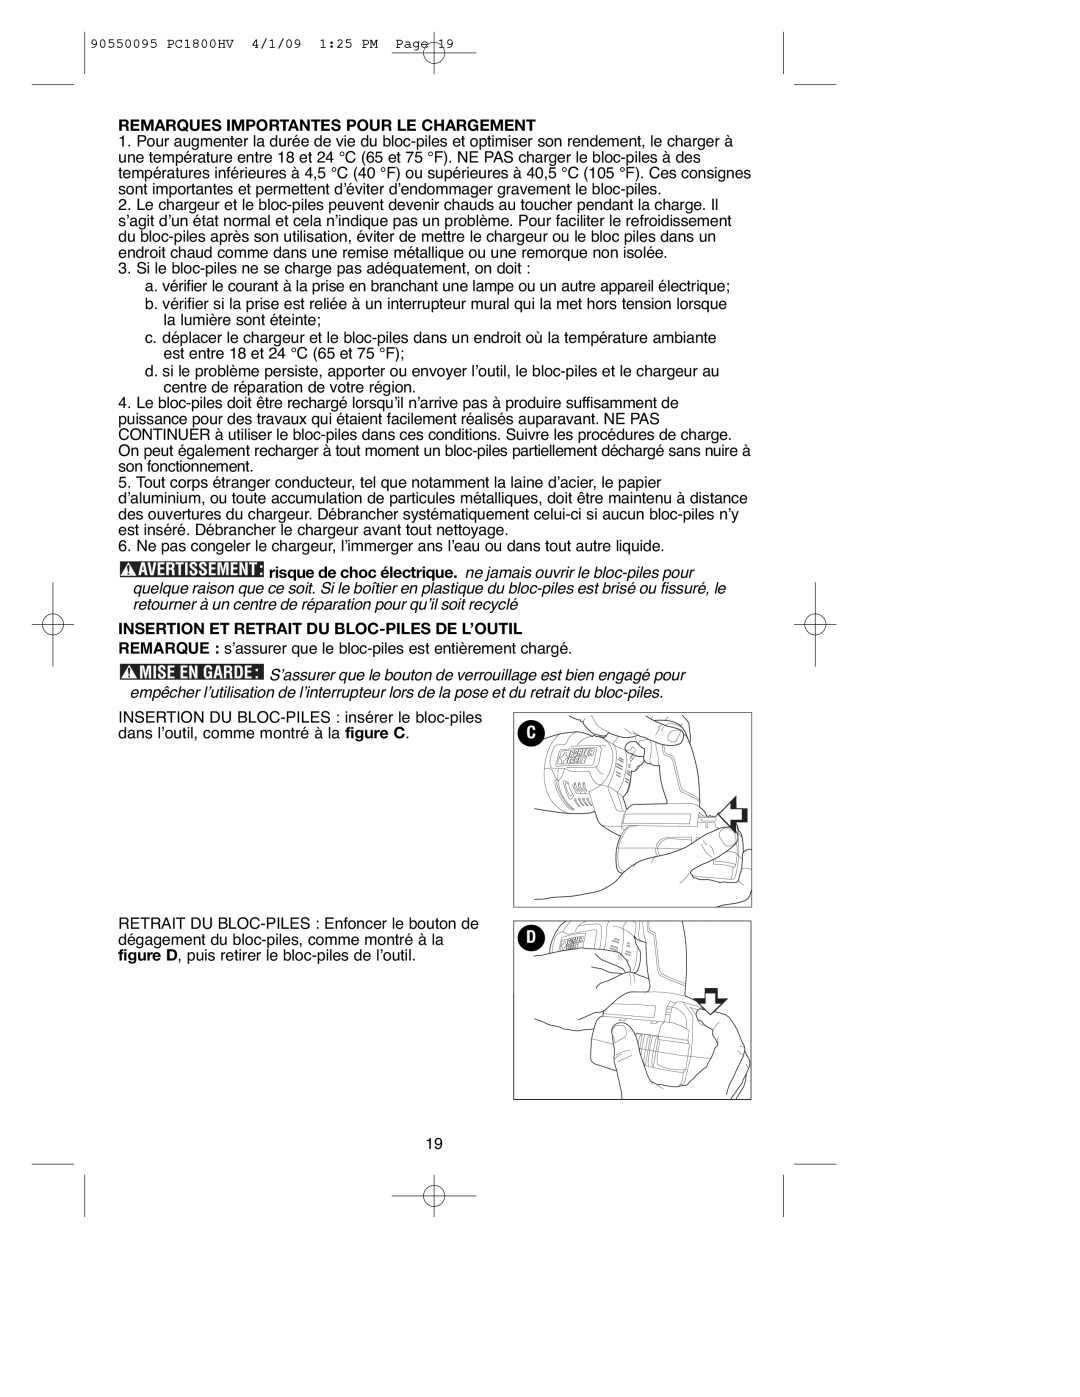 Porter-Cable PC1800HV, 90550095 Remarques Importantes Pour Le Chargement, Insertion Et Retrait Du Bloc-Pilesde L’Outil 